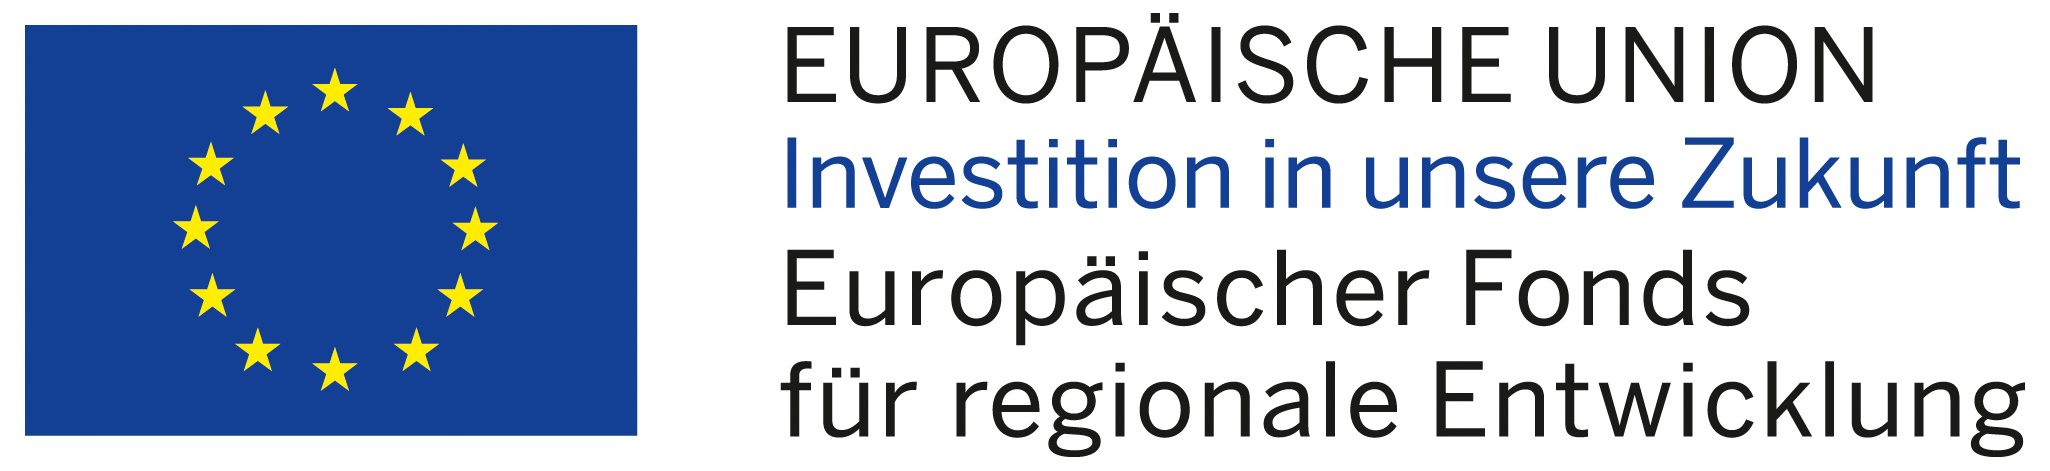 Logo Europäische Union, Investition in unsere Zukunft